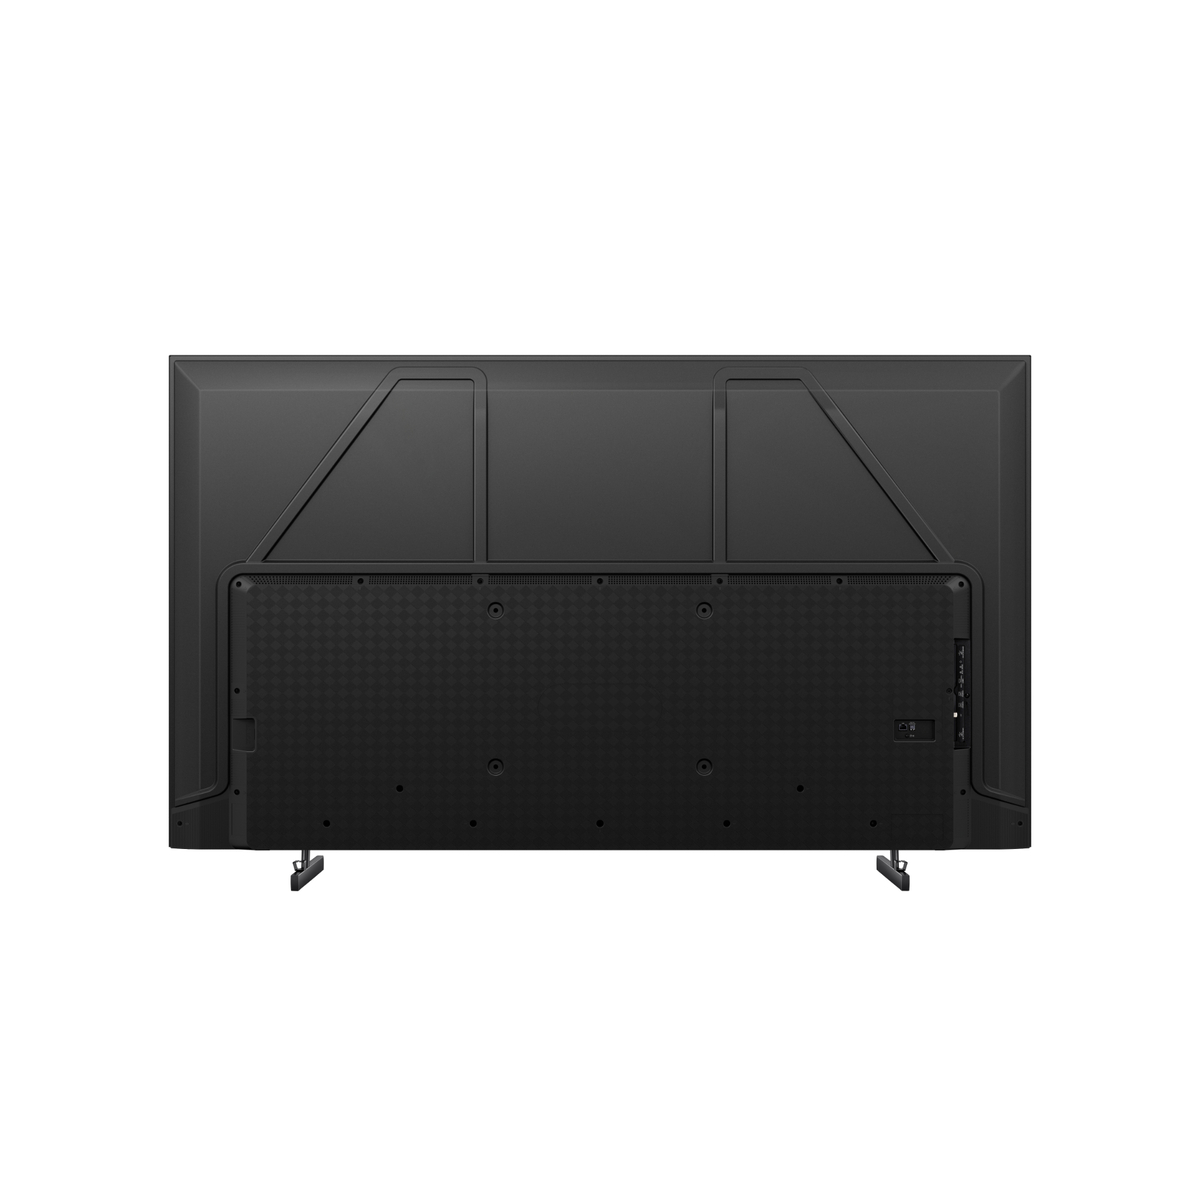 Hisense 75 inches 4K UHD LED Smart TV, Black, 75A7K